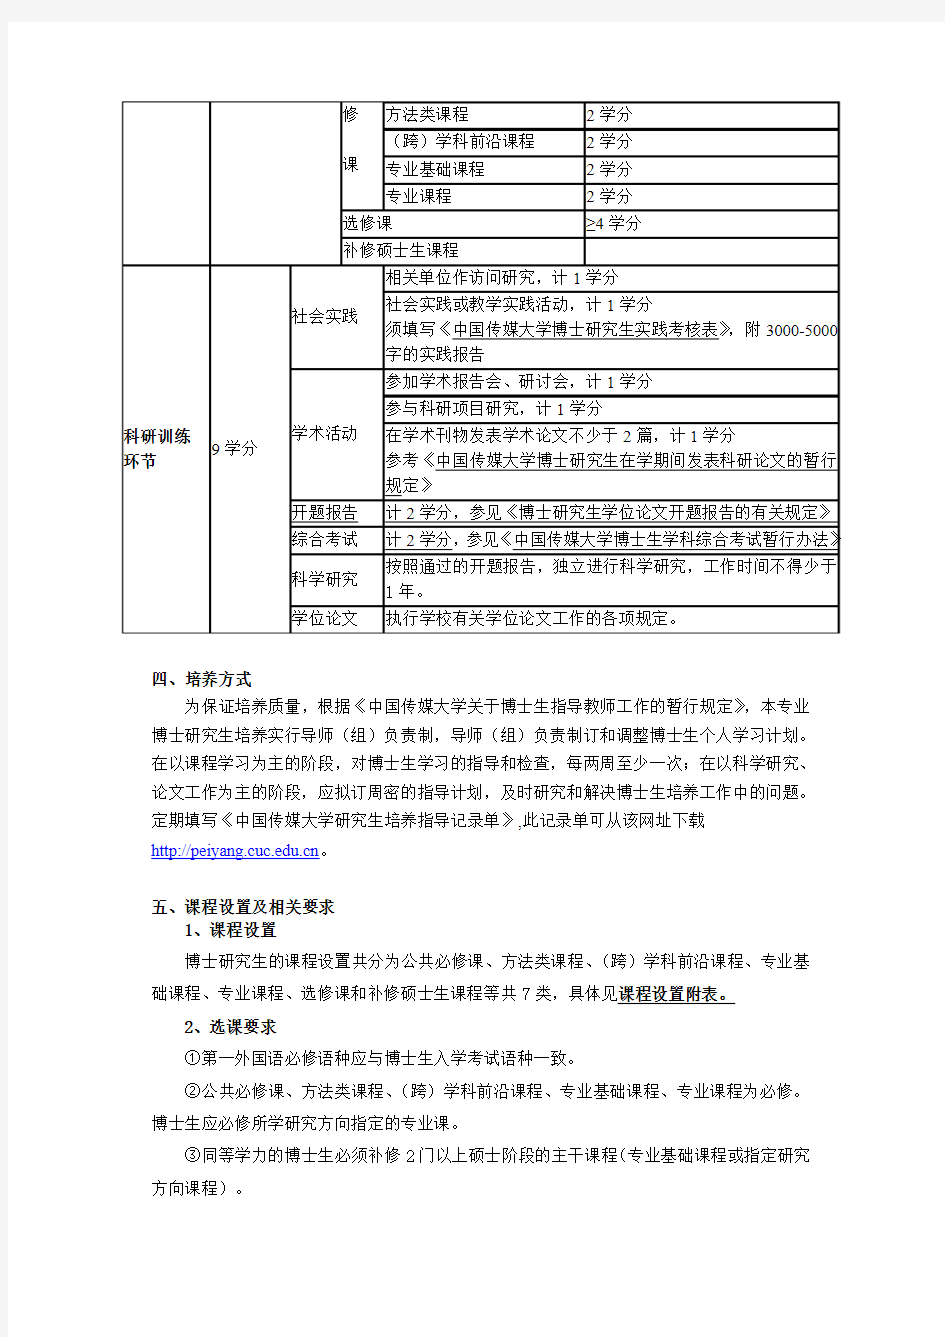 中国传媒大学2010版博士研究生培养方案《戏剧戏曲学》